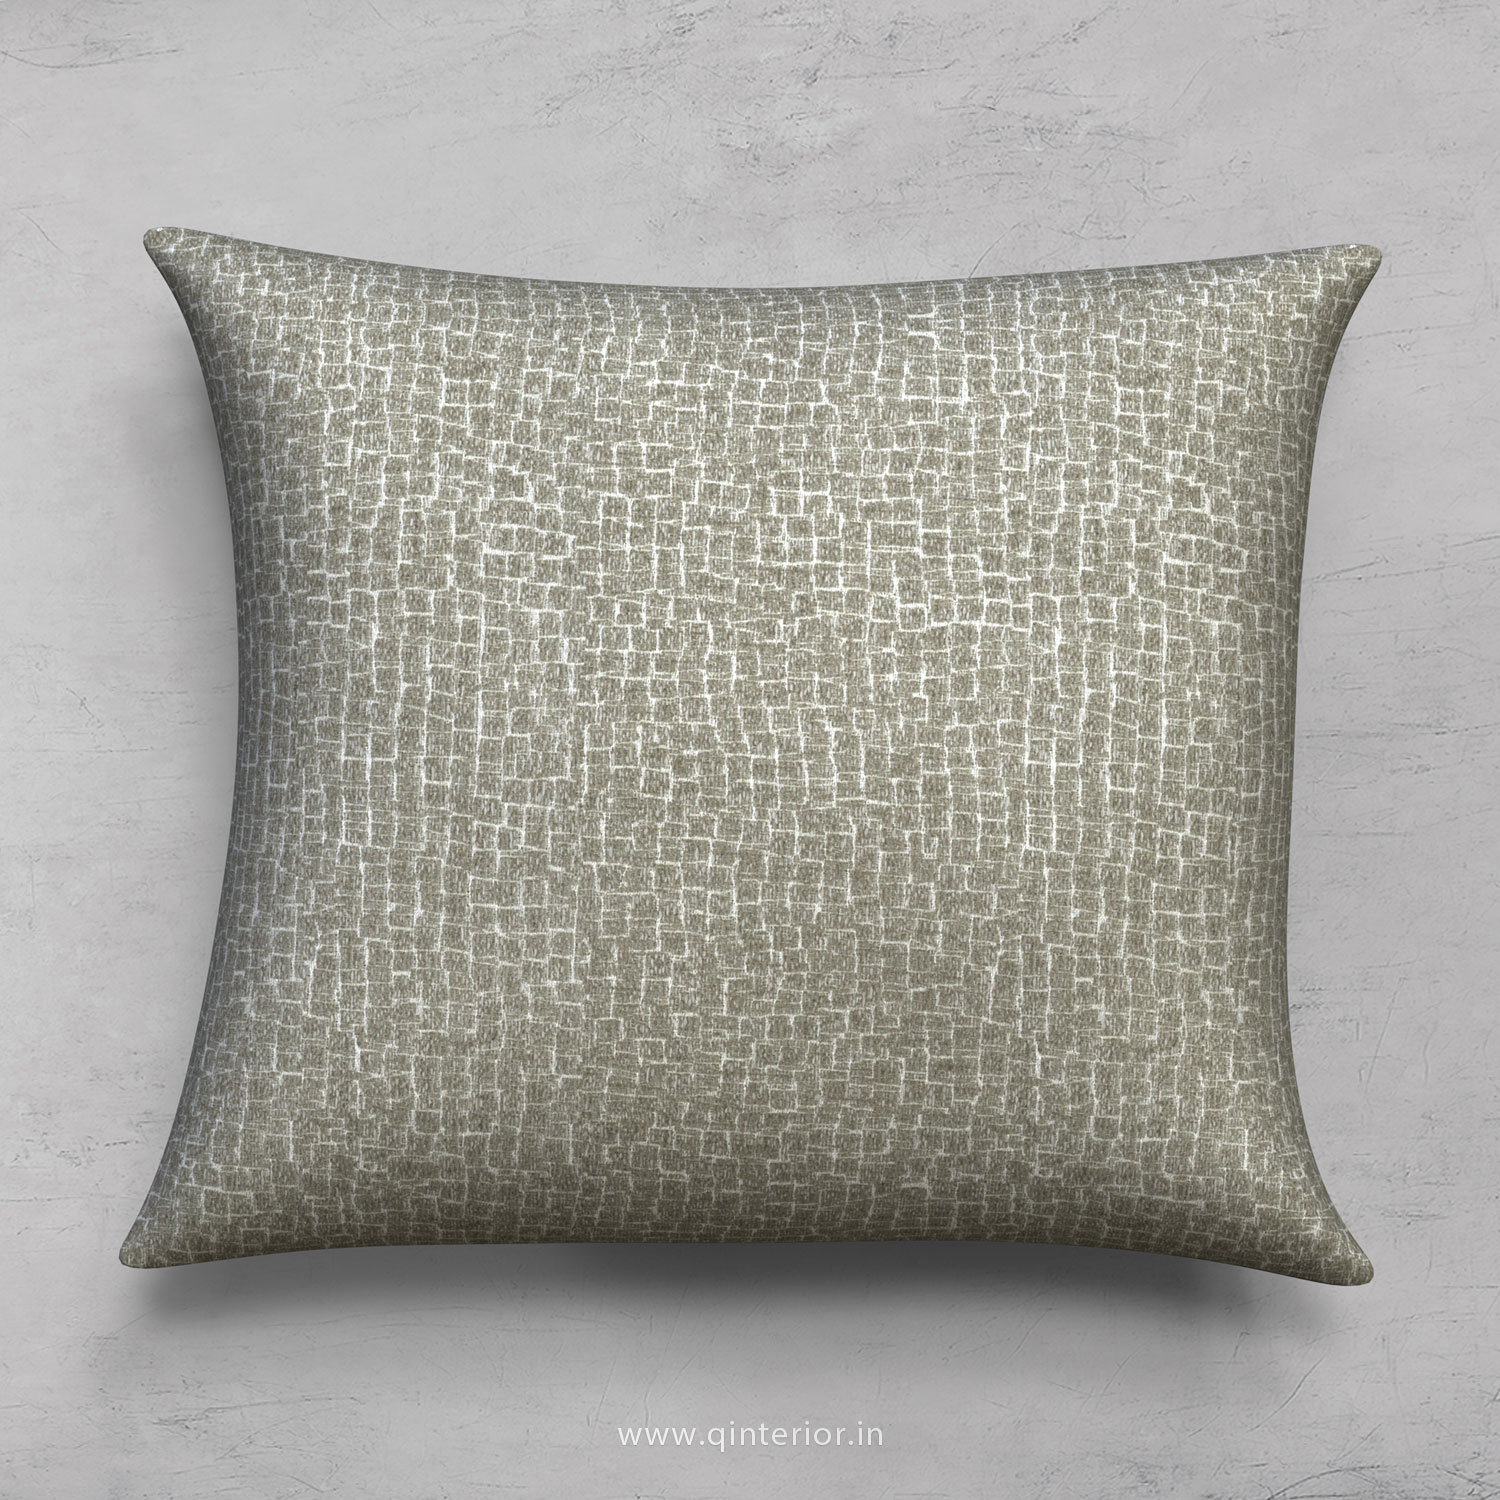 Cushion With Cushion Cover in Jacquard - CUS001 JQ31